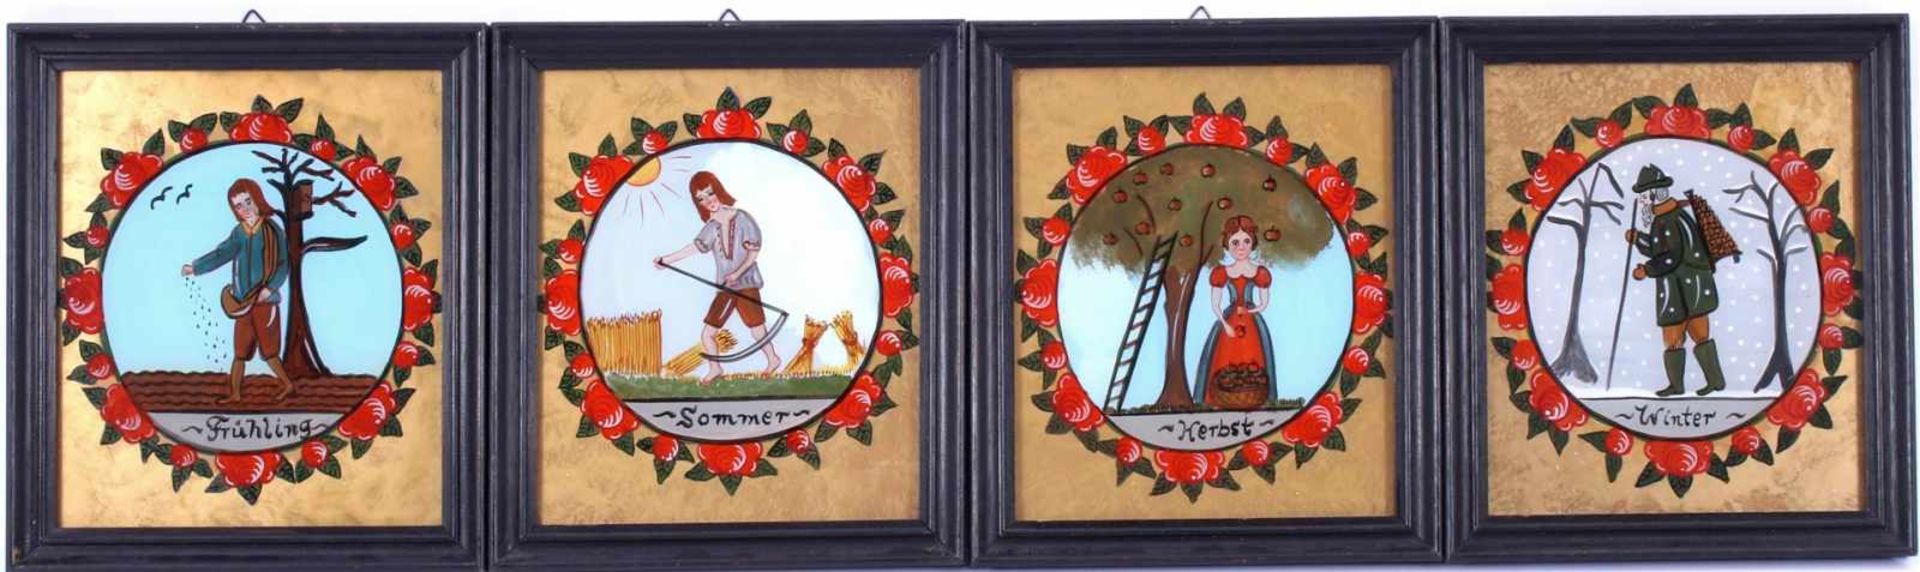 4 Duitse handbeschilderde wanddecoraties achter glas van 4 jaargetijden Winter, Fruhling, Sommer,